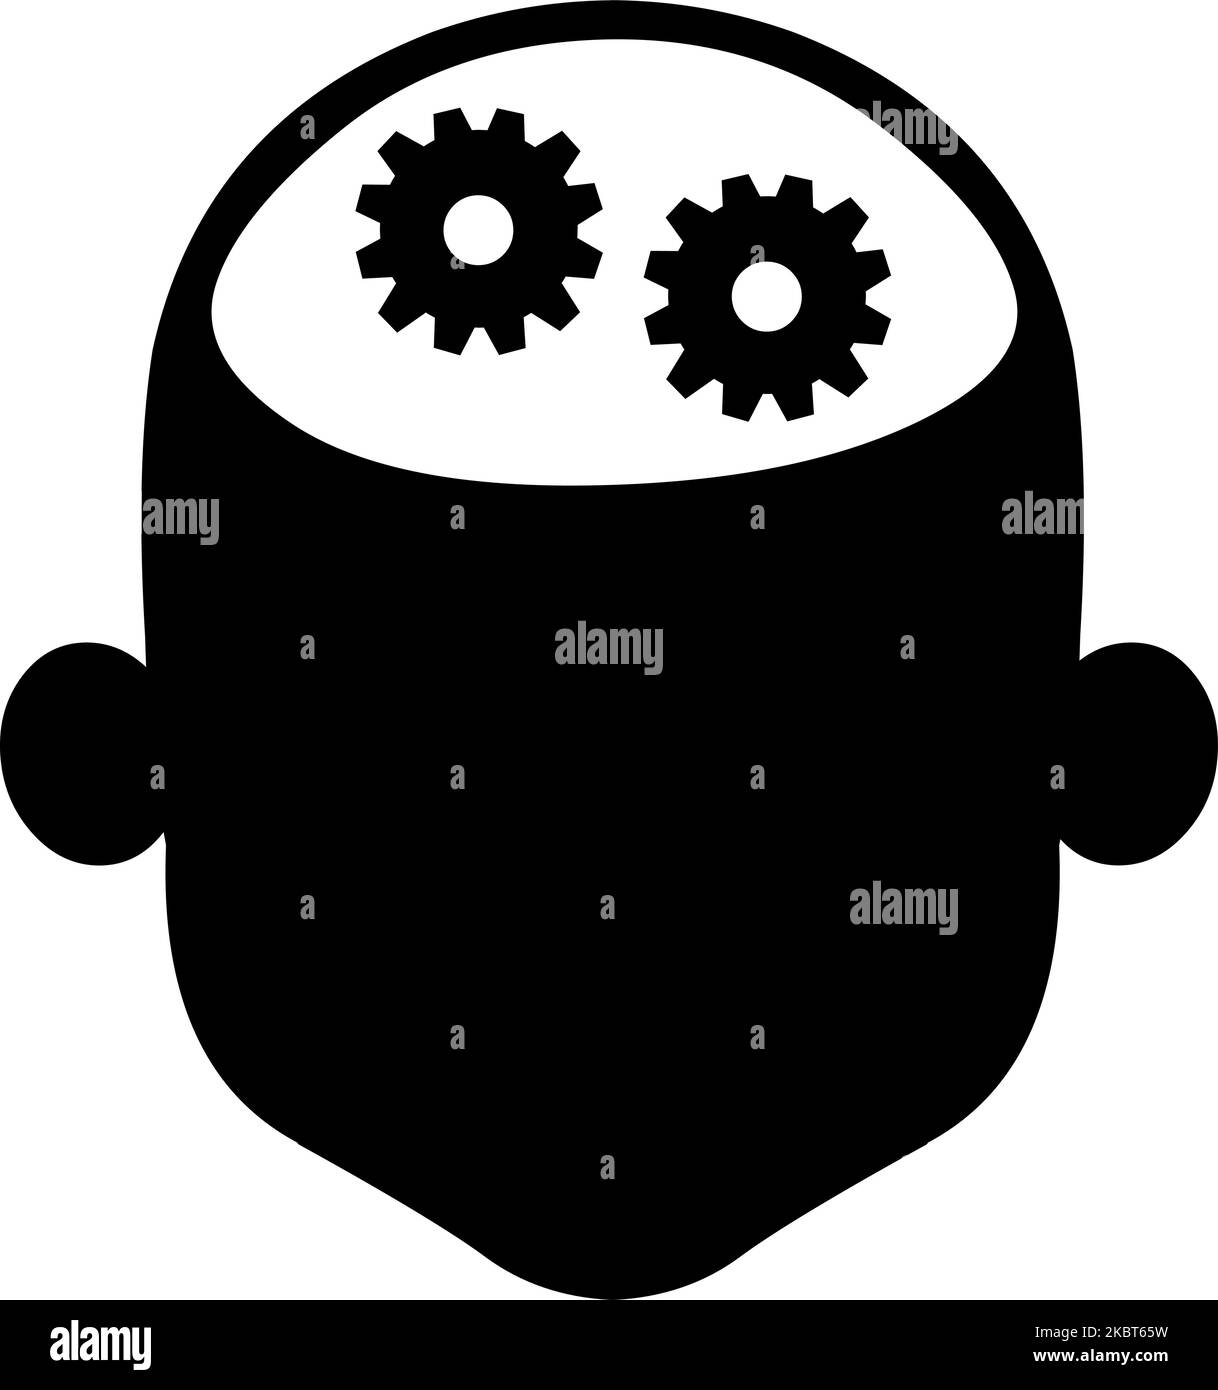 Vektor-Illustration der Ikone der Silhouette des Kopfes einer Person mit Zahnrädern im Kopf, im Konzept des Menschen denken Stock Vektor